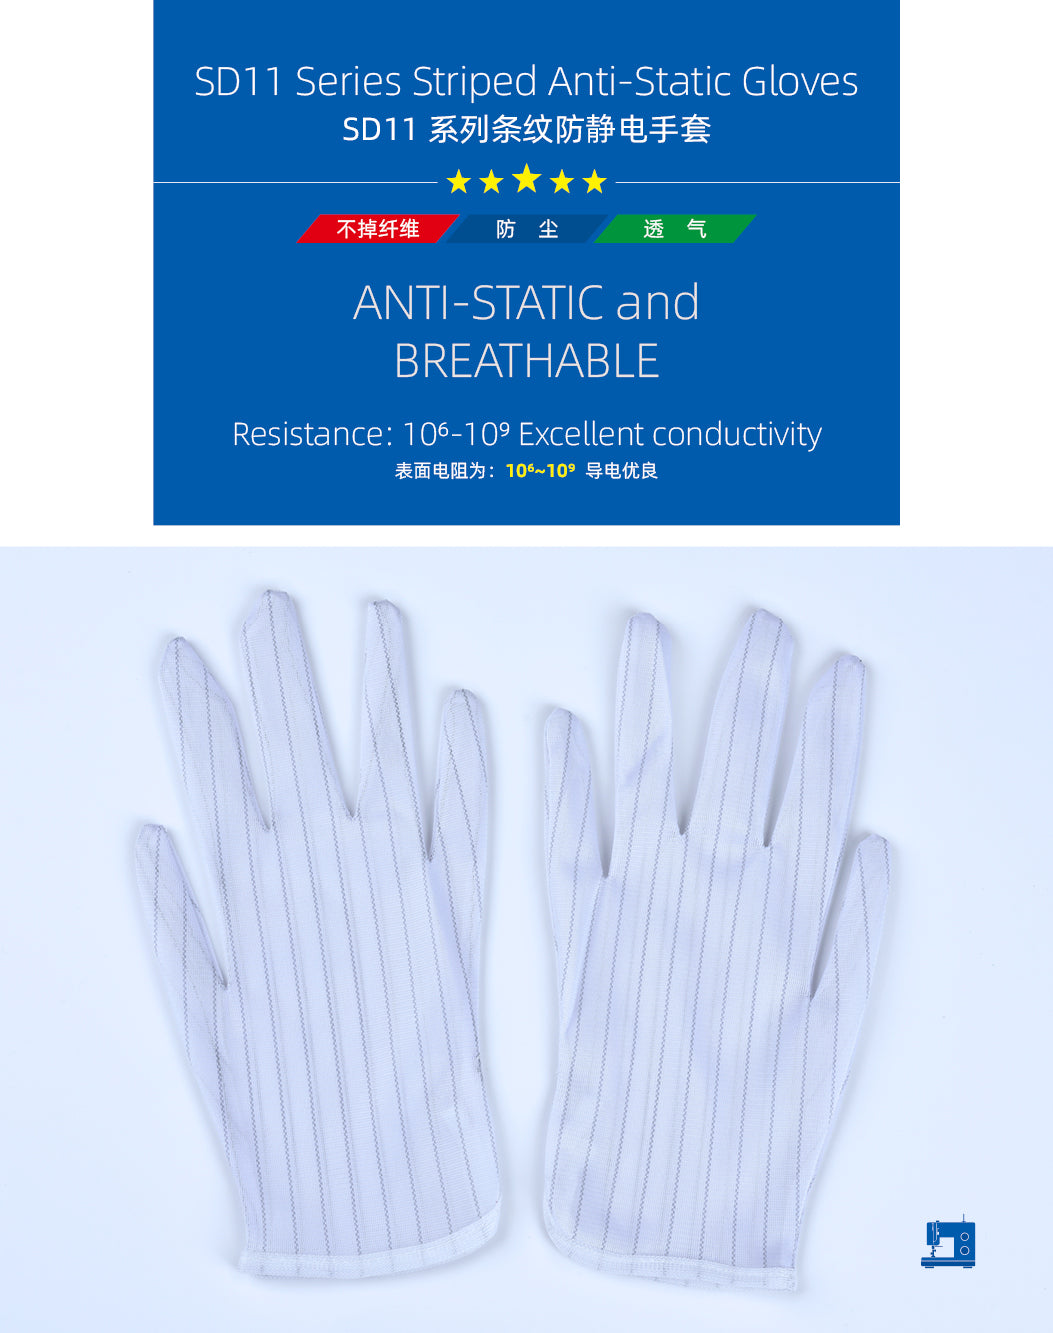 gants antistatiques rayés, gants pour salle blanche adaptés aux salles sans poussière et aux assemblages électroniques 10 paires 